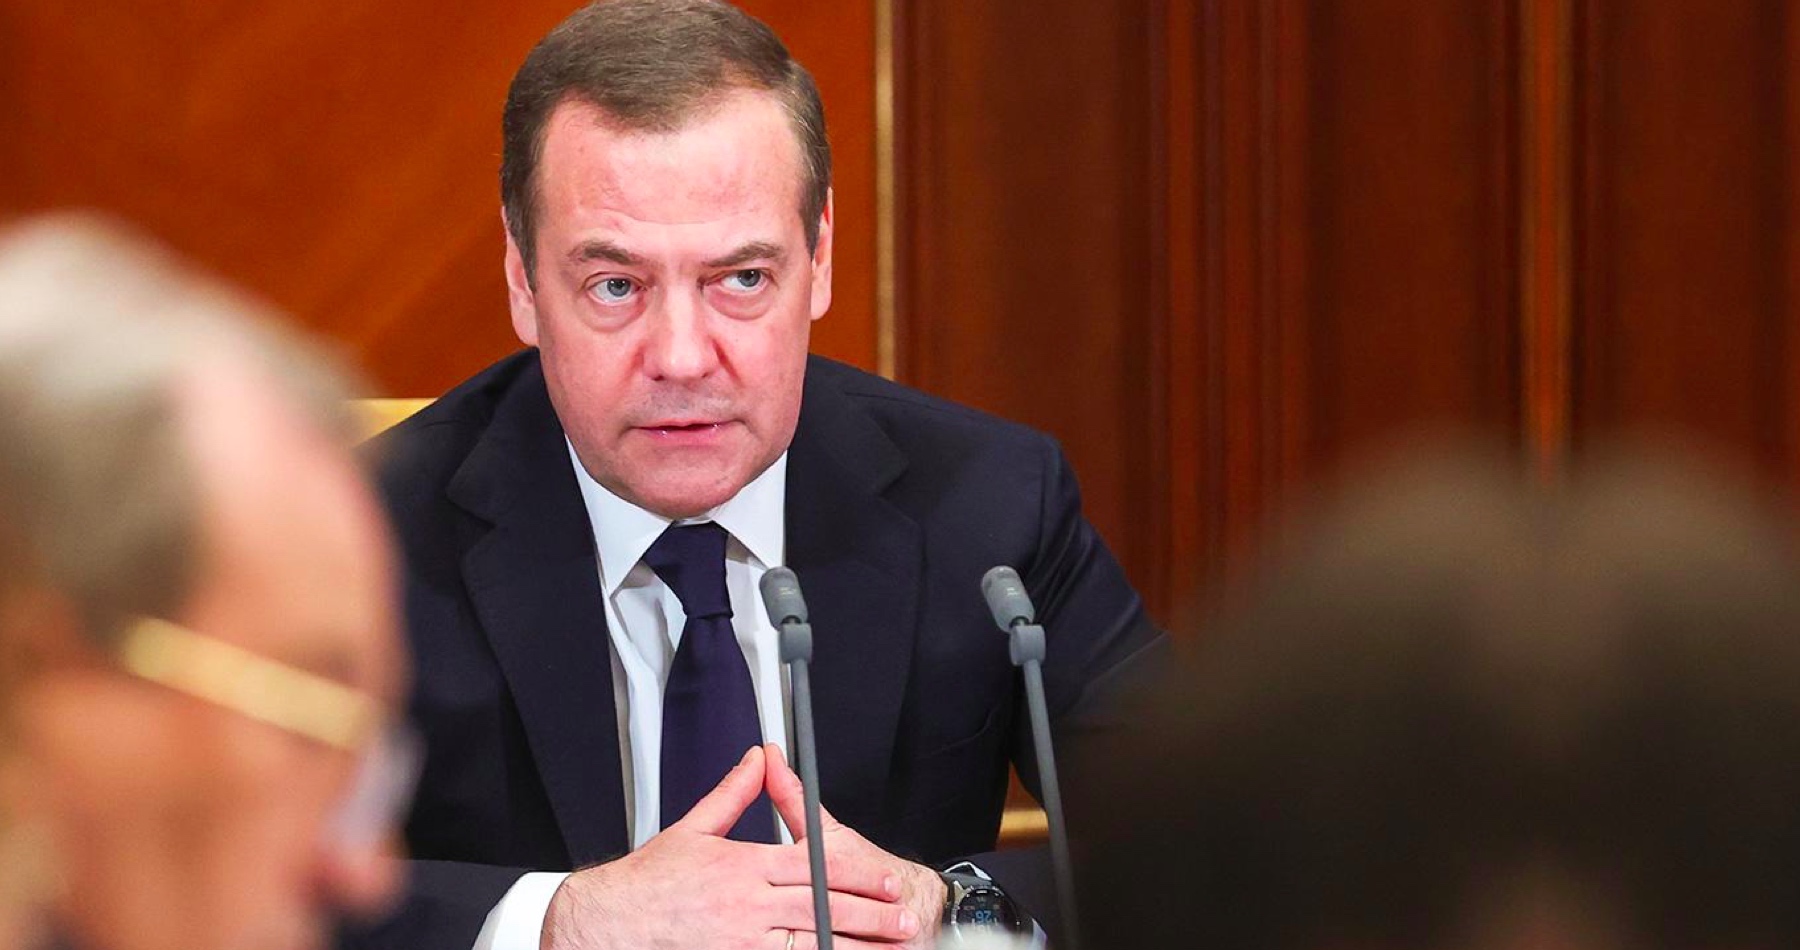 VIDEO: Zelenského režim predstavuje hrozbu pre existenciu Ruska, vyhlásil ruský exprezident Medvedev s tým, že Kyjev bude musieť byť nakoniec asi dobytý, pretože je to ruské mesto ovládané nepriateľmi Ruska na čele s USA